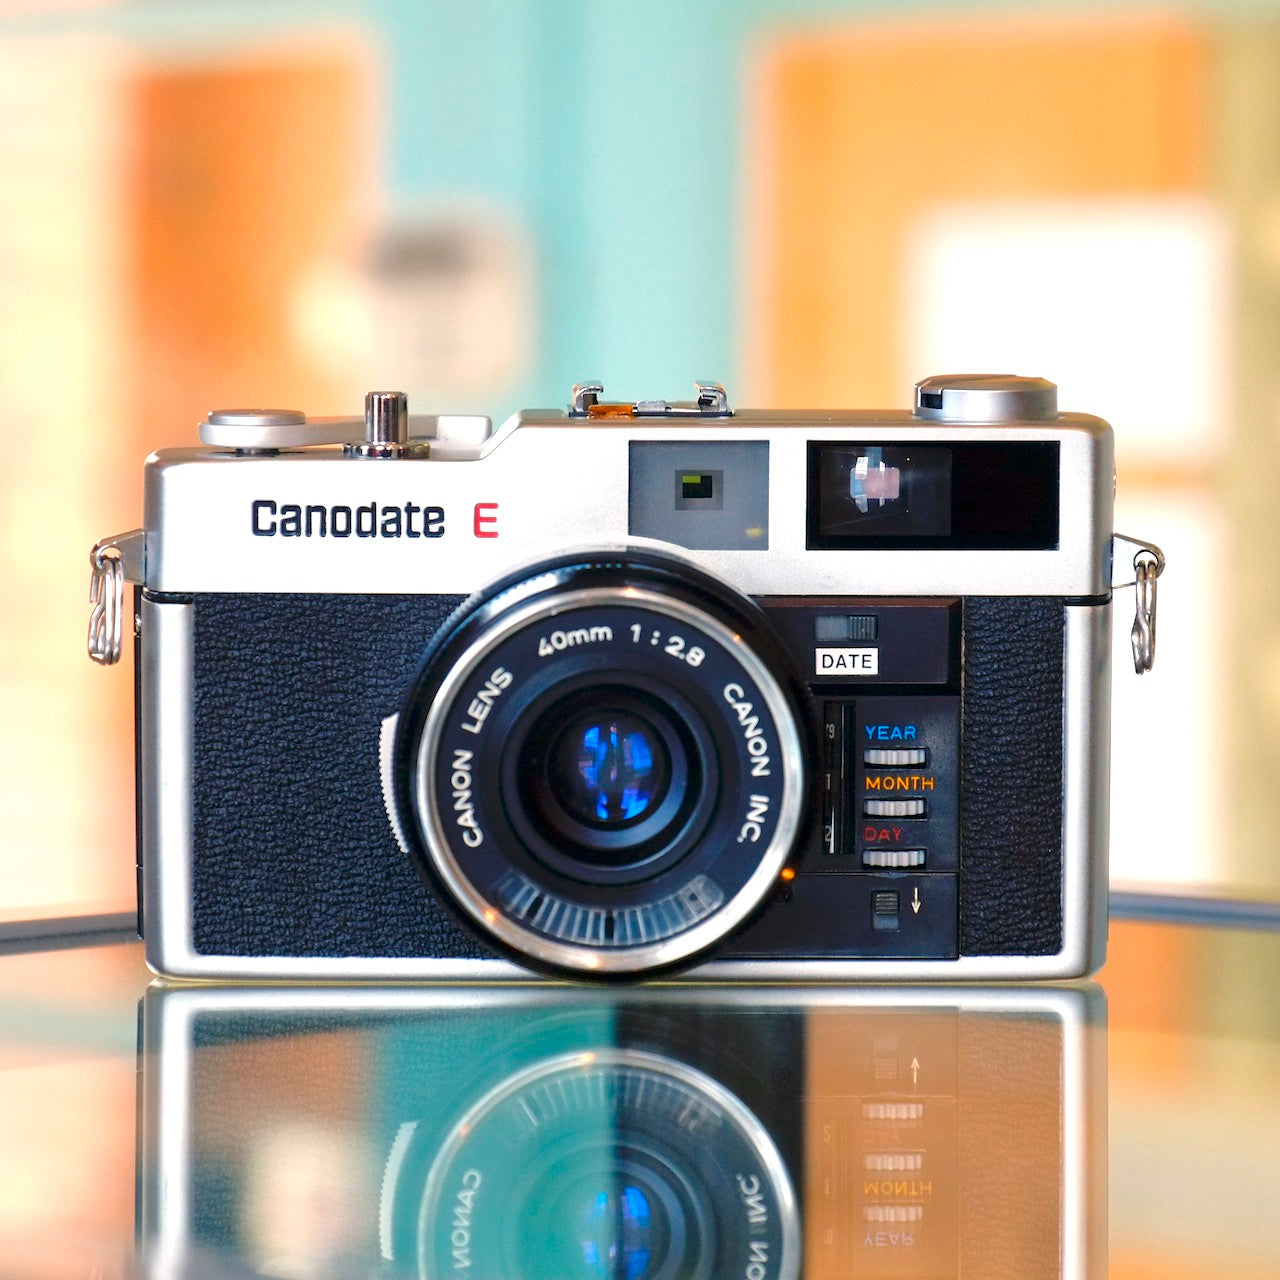 Canon Canodate E – Camera Traders